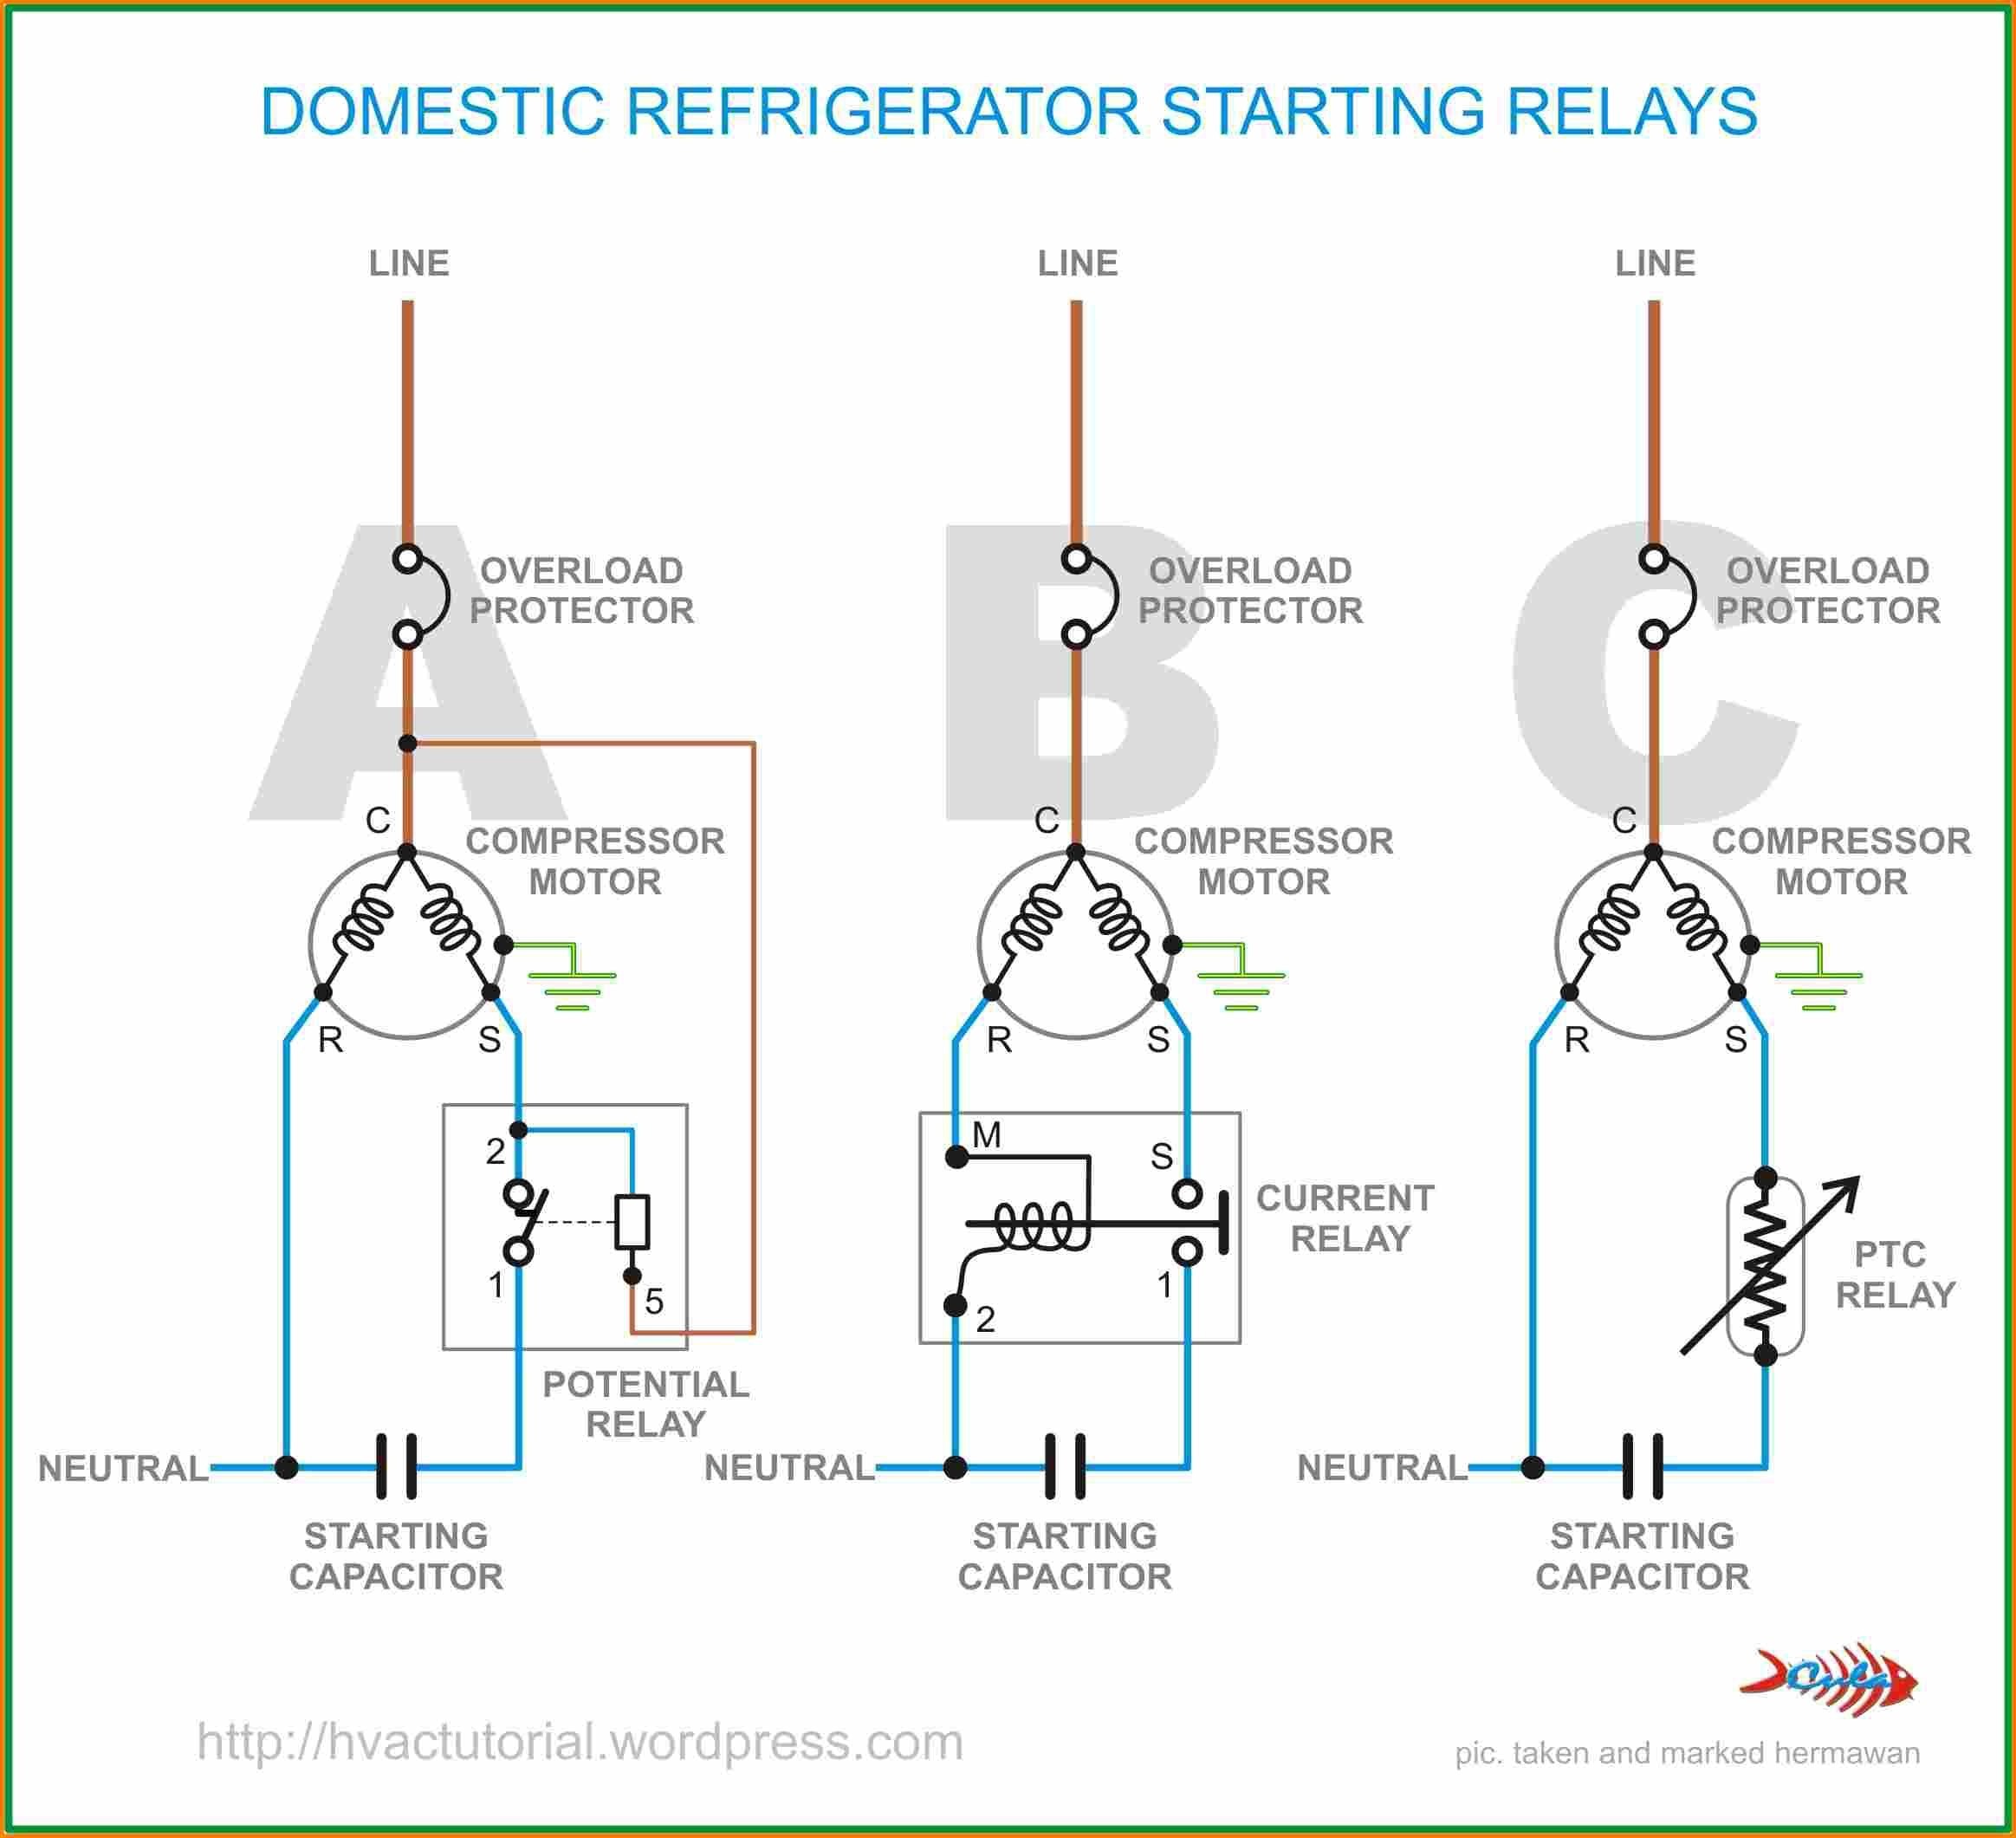 Refrigerator Start Relay Wiring Diagram Danfoss Relay Wiring Diagram New Danfoss Inverter Wiring Diagram Best